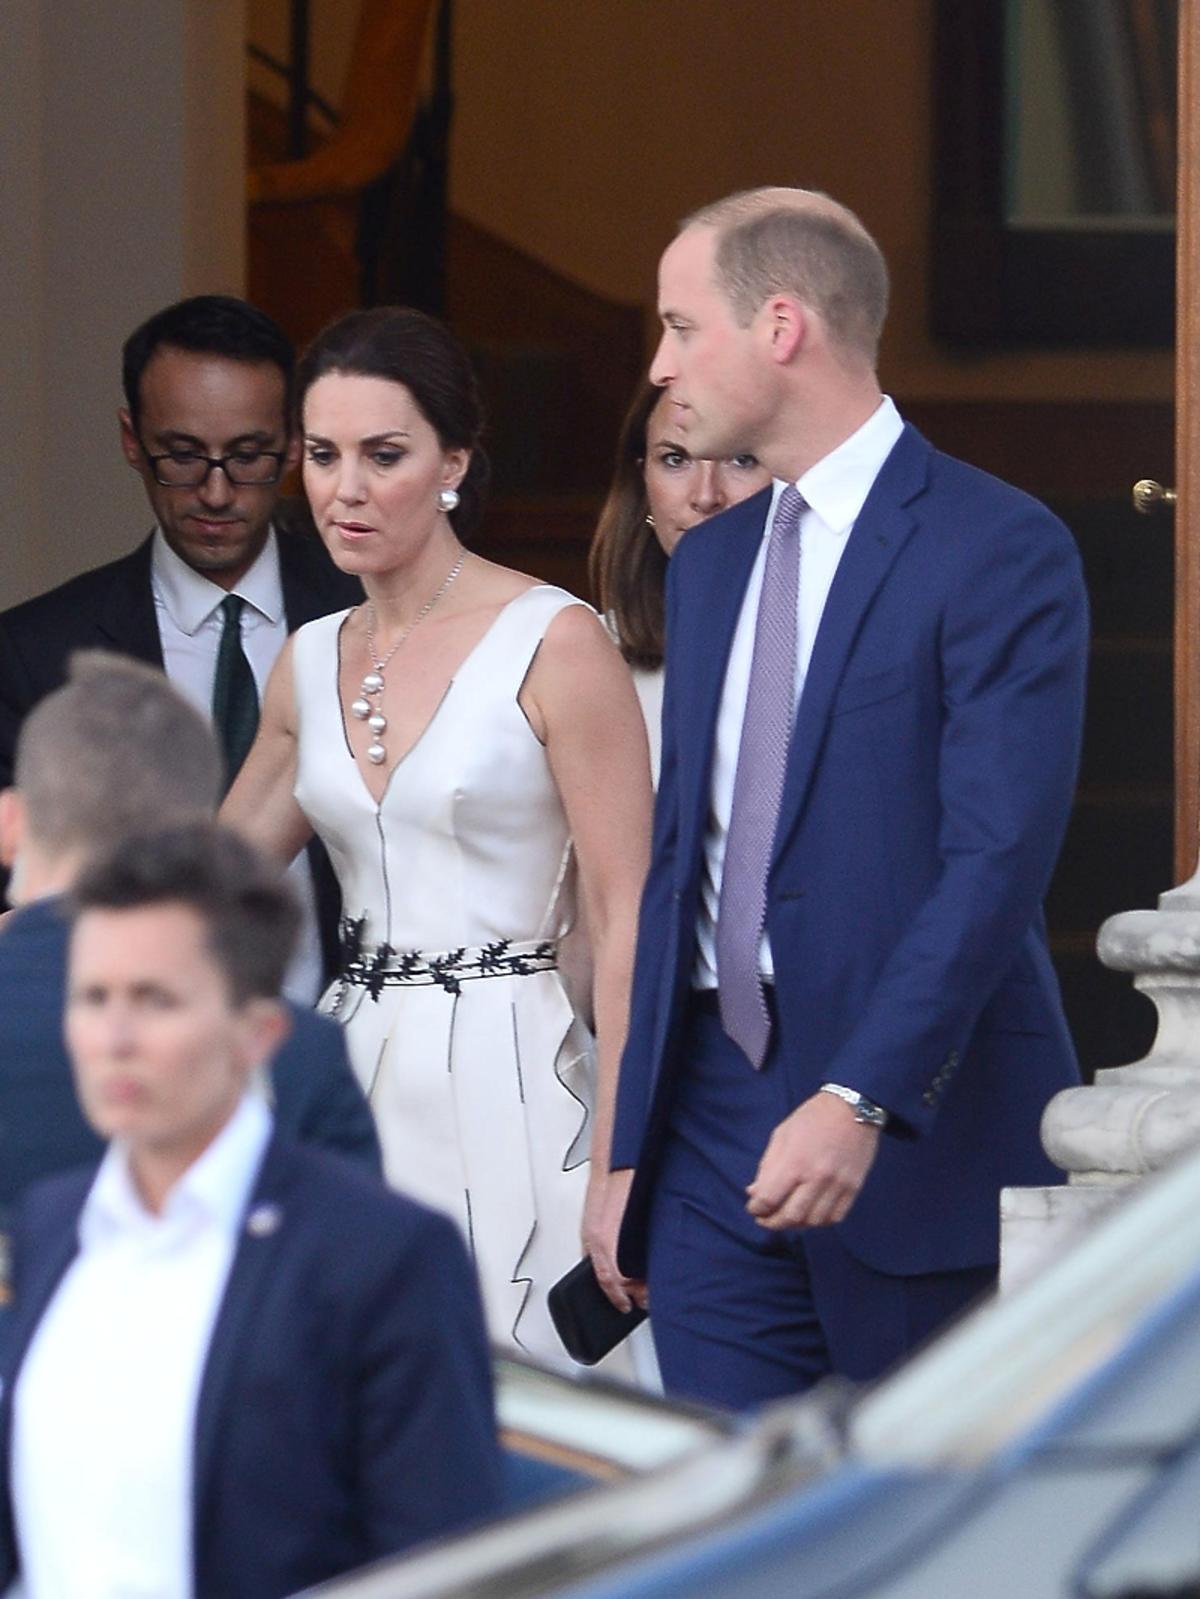 Księżna Kate pokłóciła się z księciem Williamem w Warszawie przed balem w Łazienkach Królewskich?